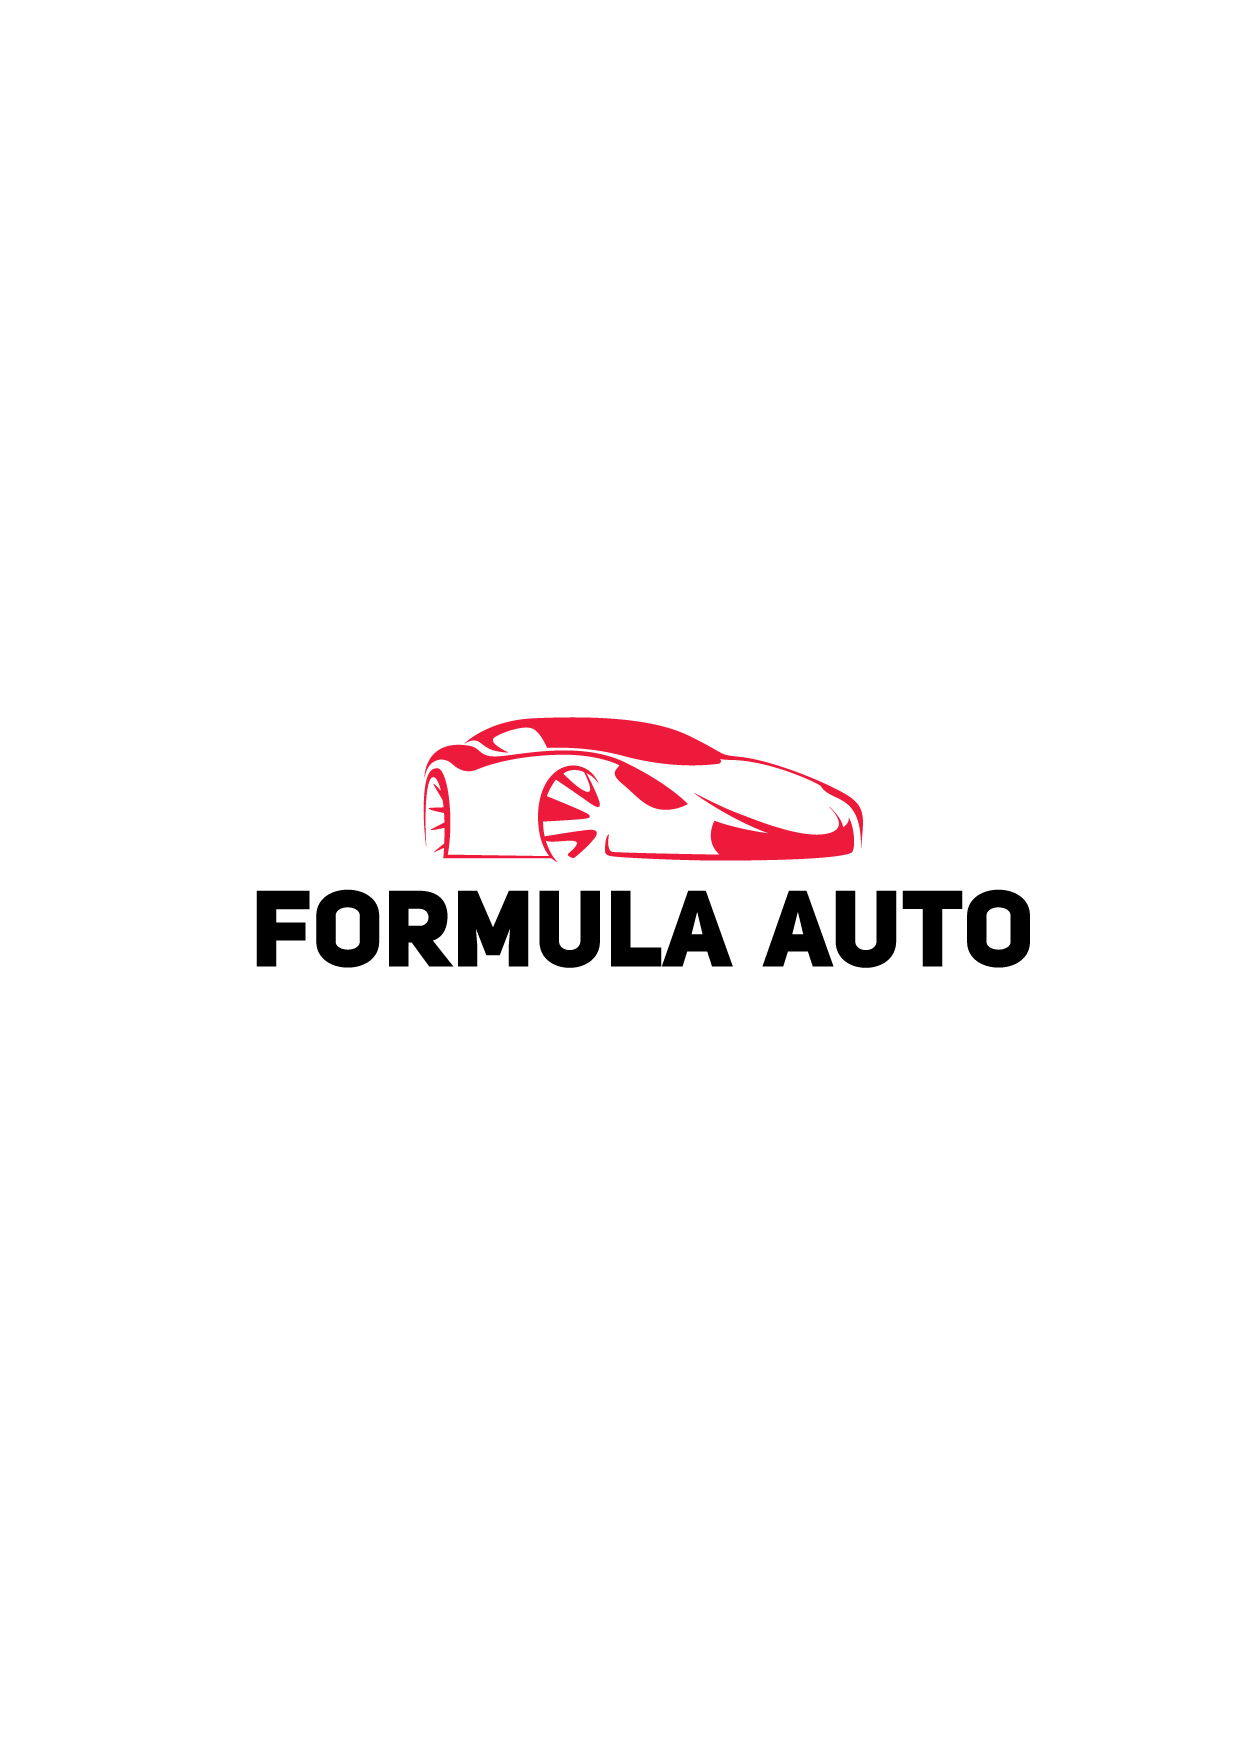 Logotype Formula Auto